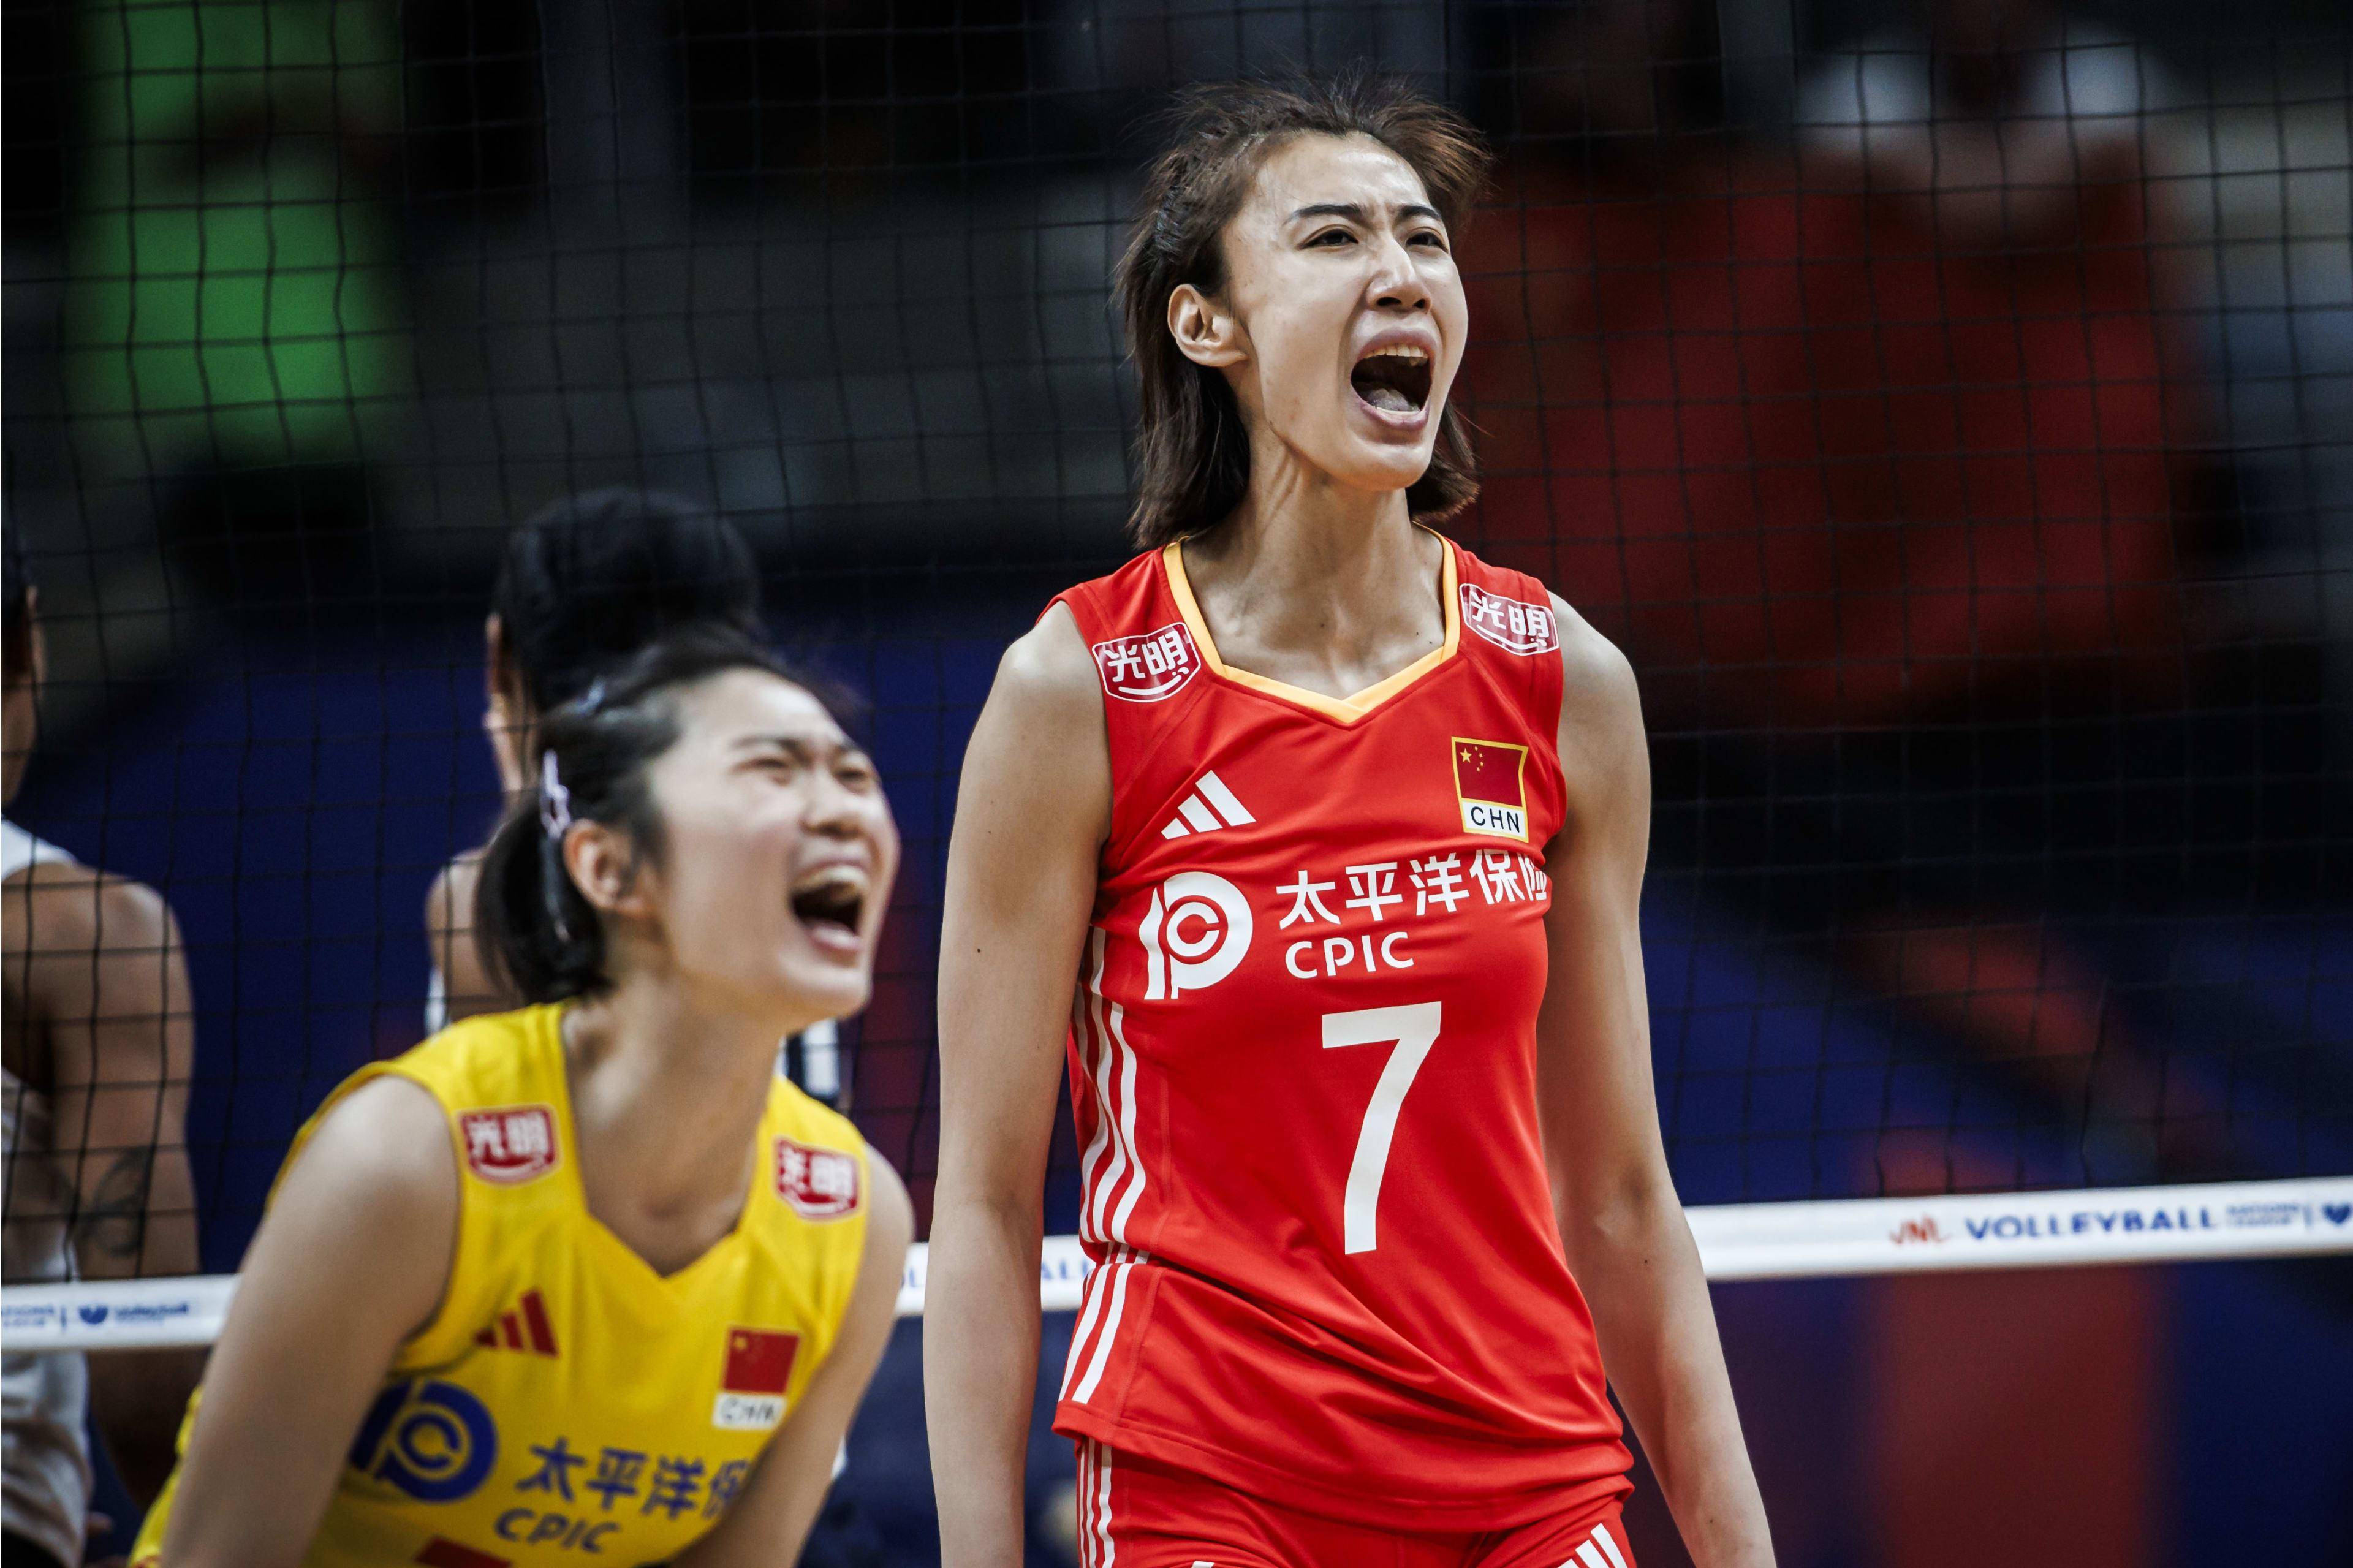 中国女排升至世界第五,巴黎奥运资格更近一步!王媛媛世界级表现